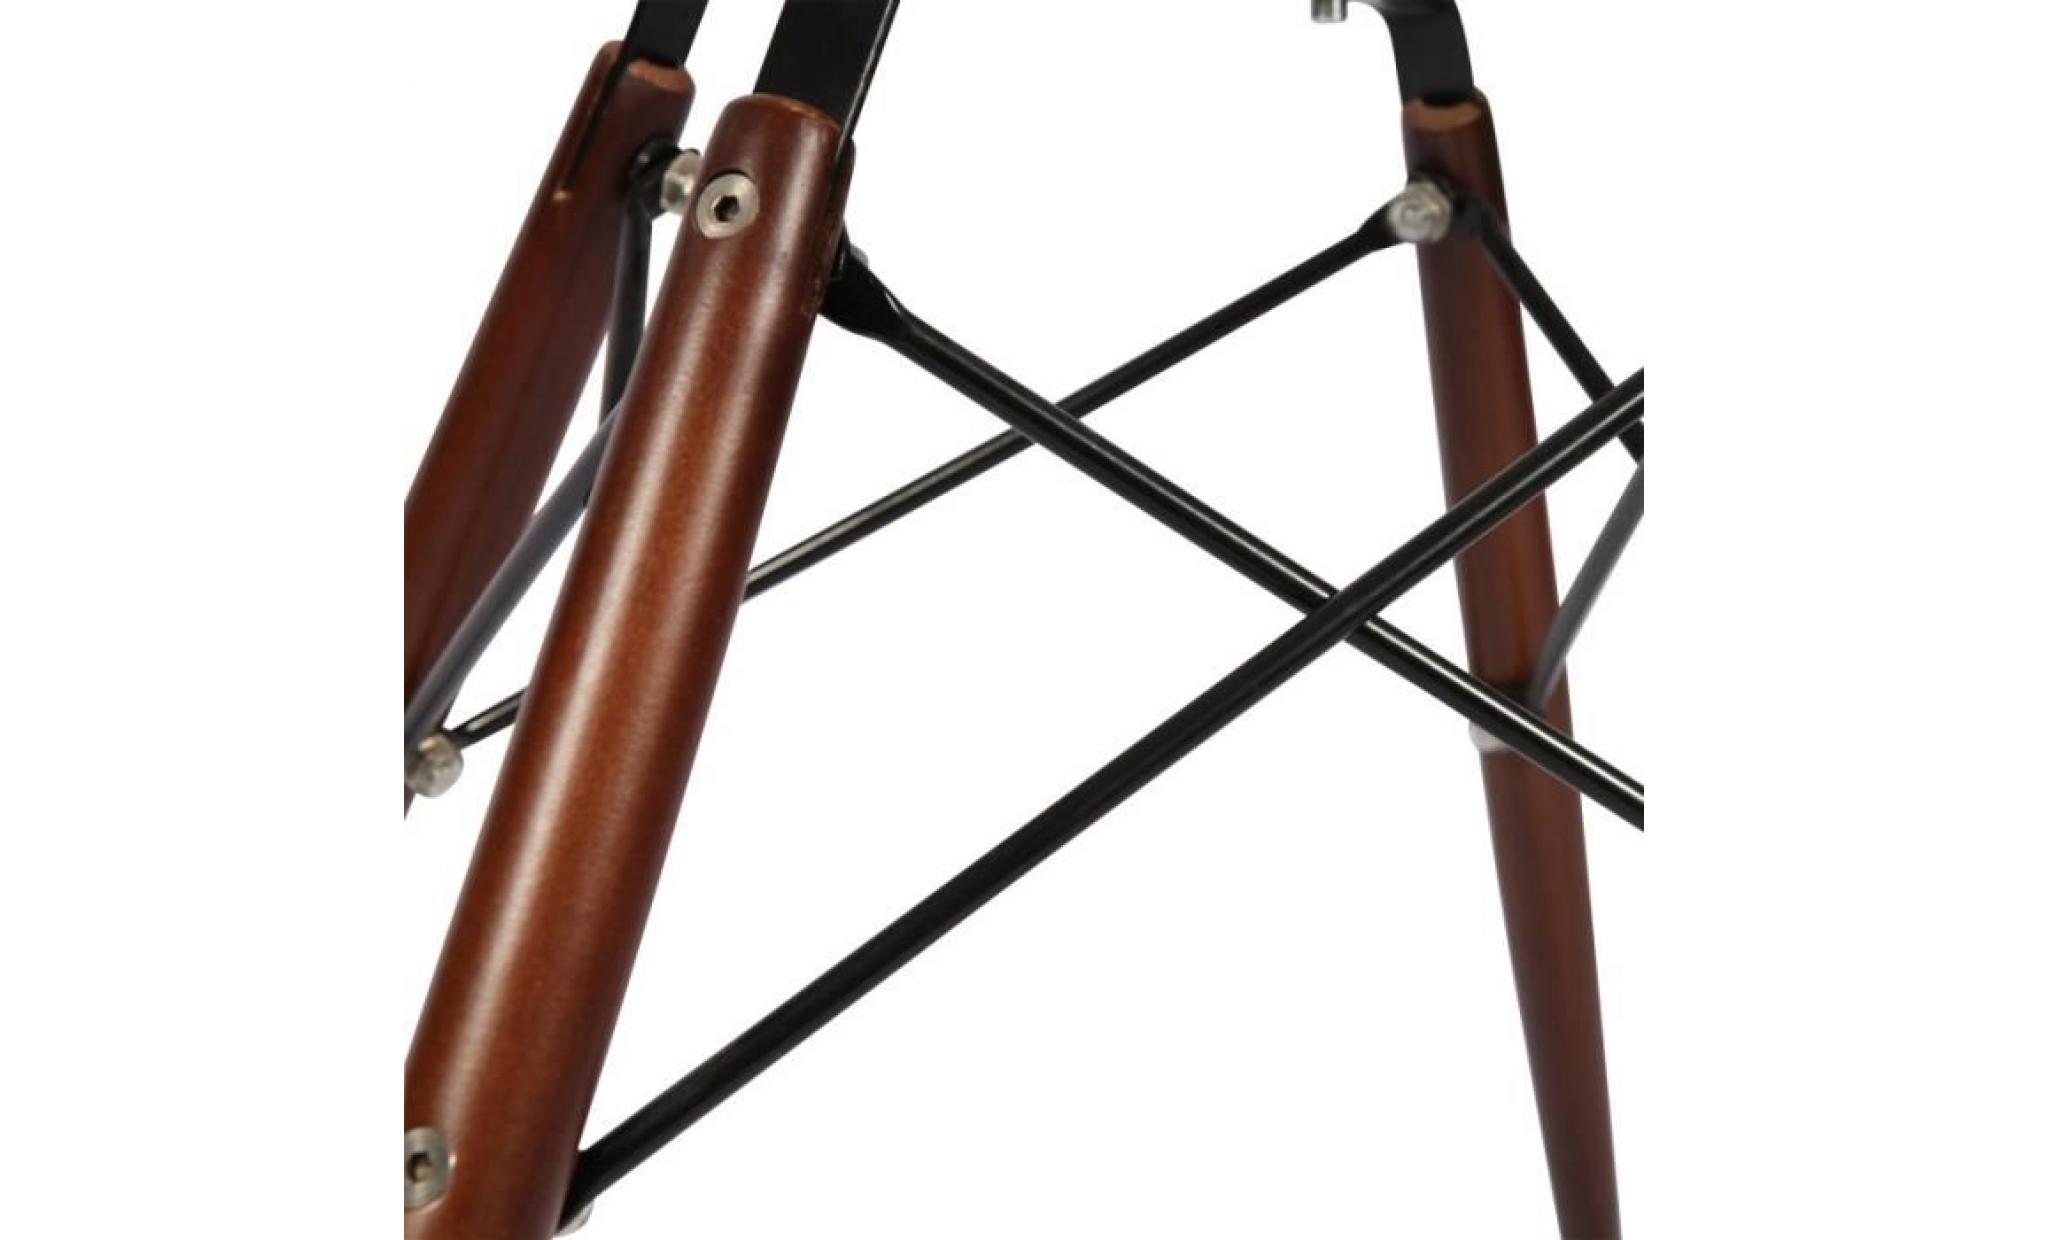 1 x fauteuil design retro style eames daw hauteur 48cm pieds en bois vernis noyer assise rouge mobistyl® pas cher